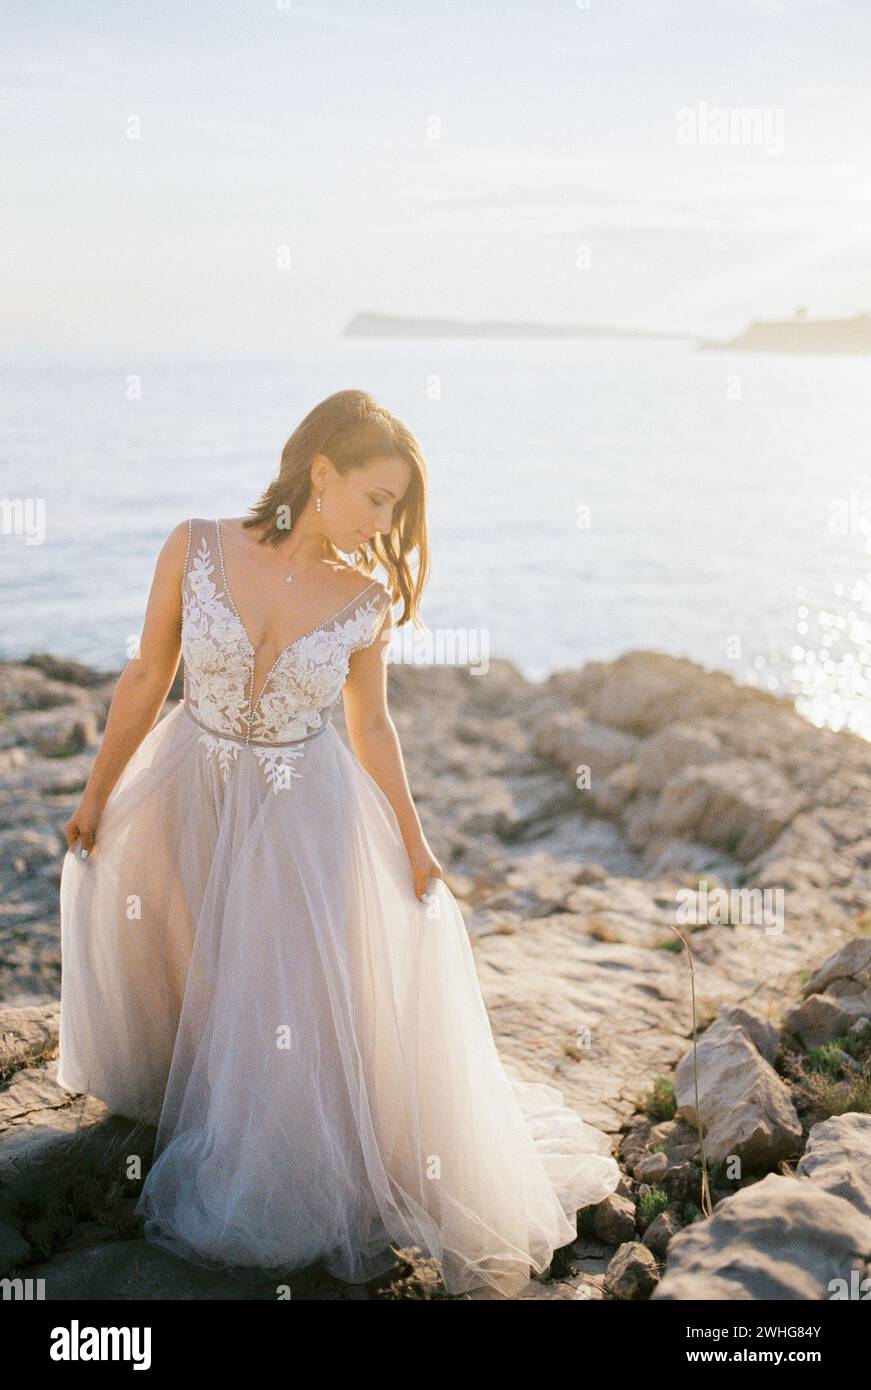 La sposa con un abito soffice bianco si erge su una spiaggia rocciosa che tiene l'orlo con le mani Foto Stock